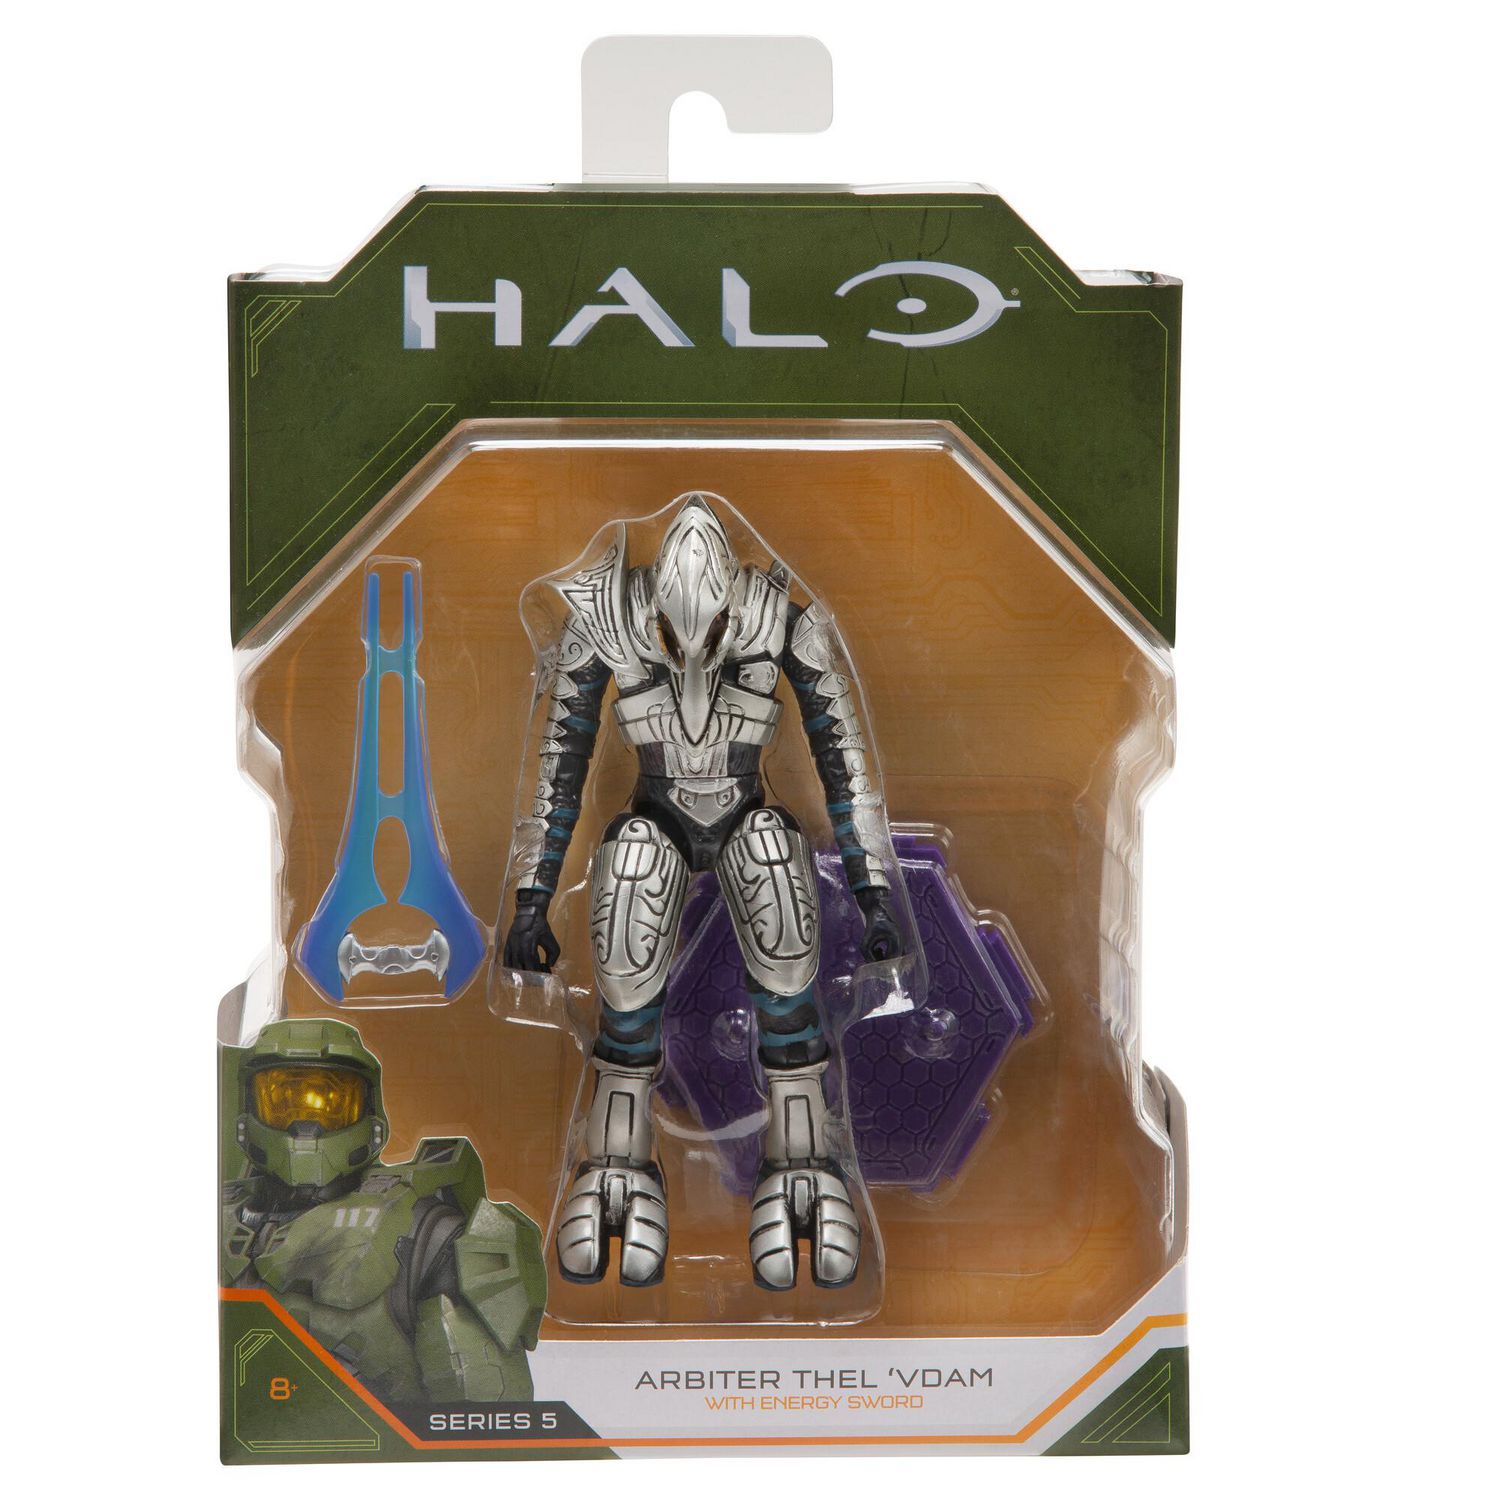 Halo Figure - Arbiter Thel 'Vadam with Energy Sword